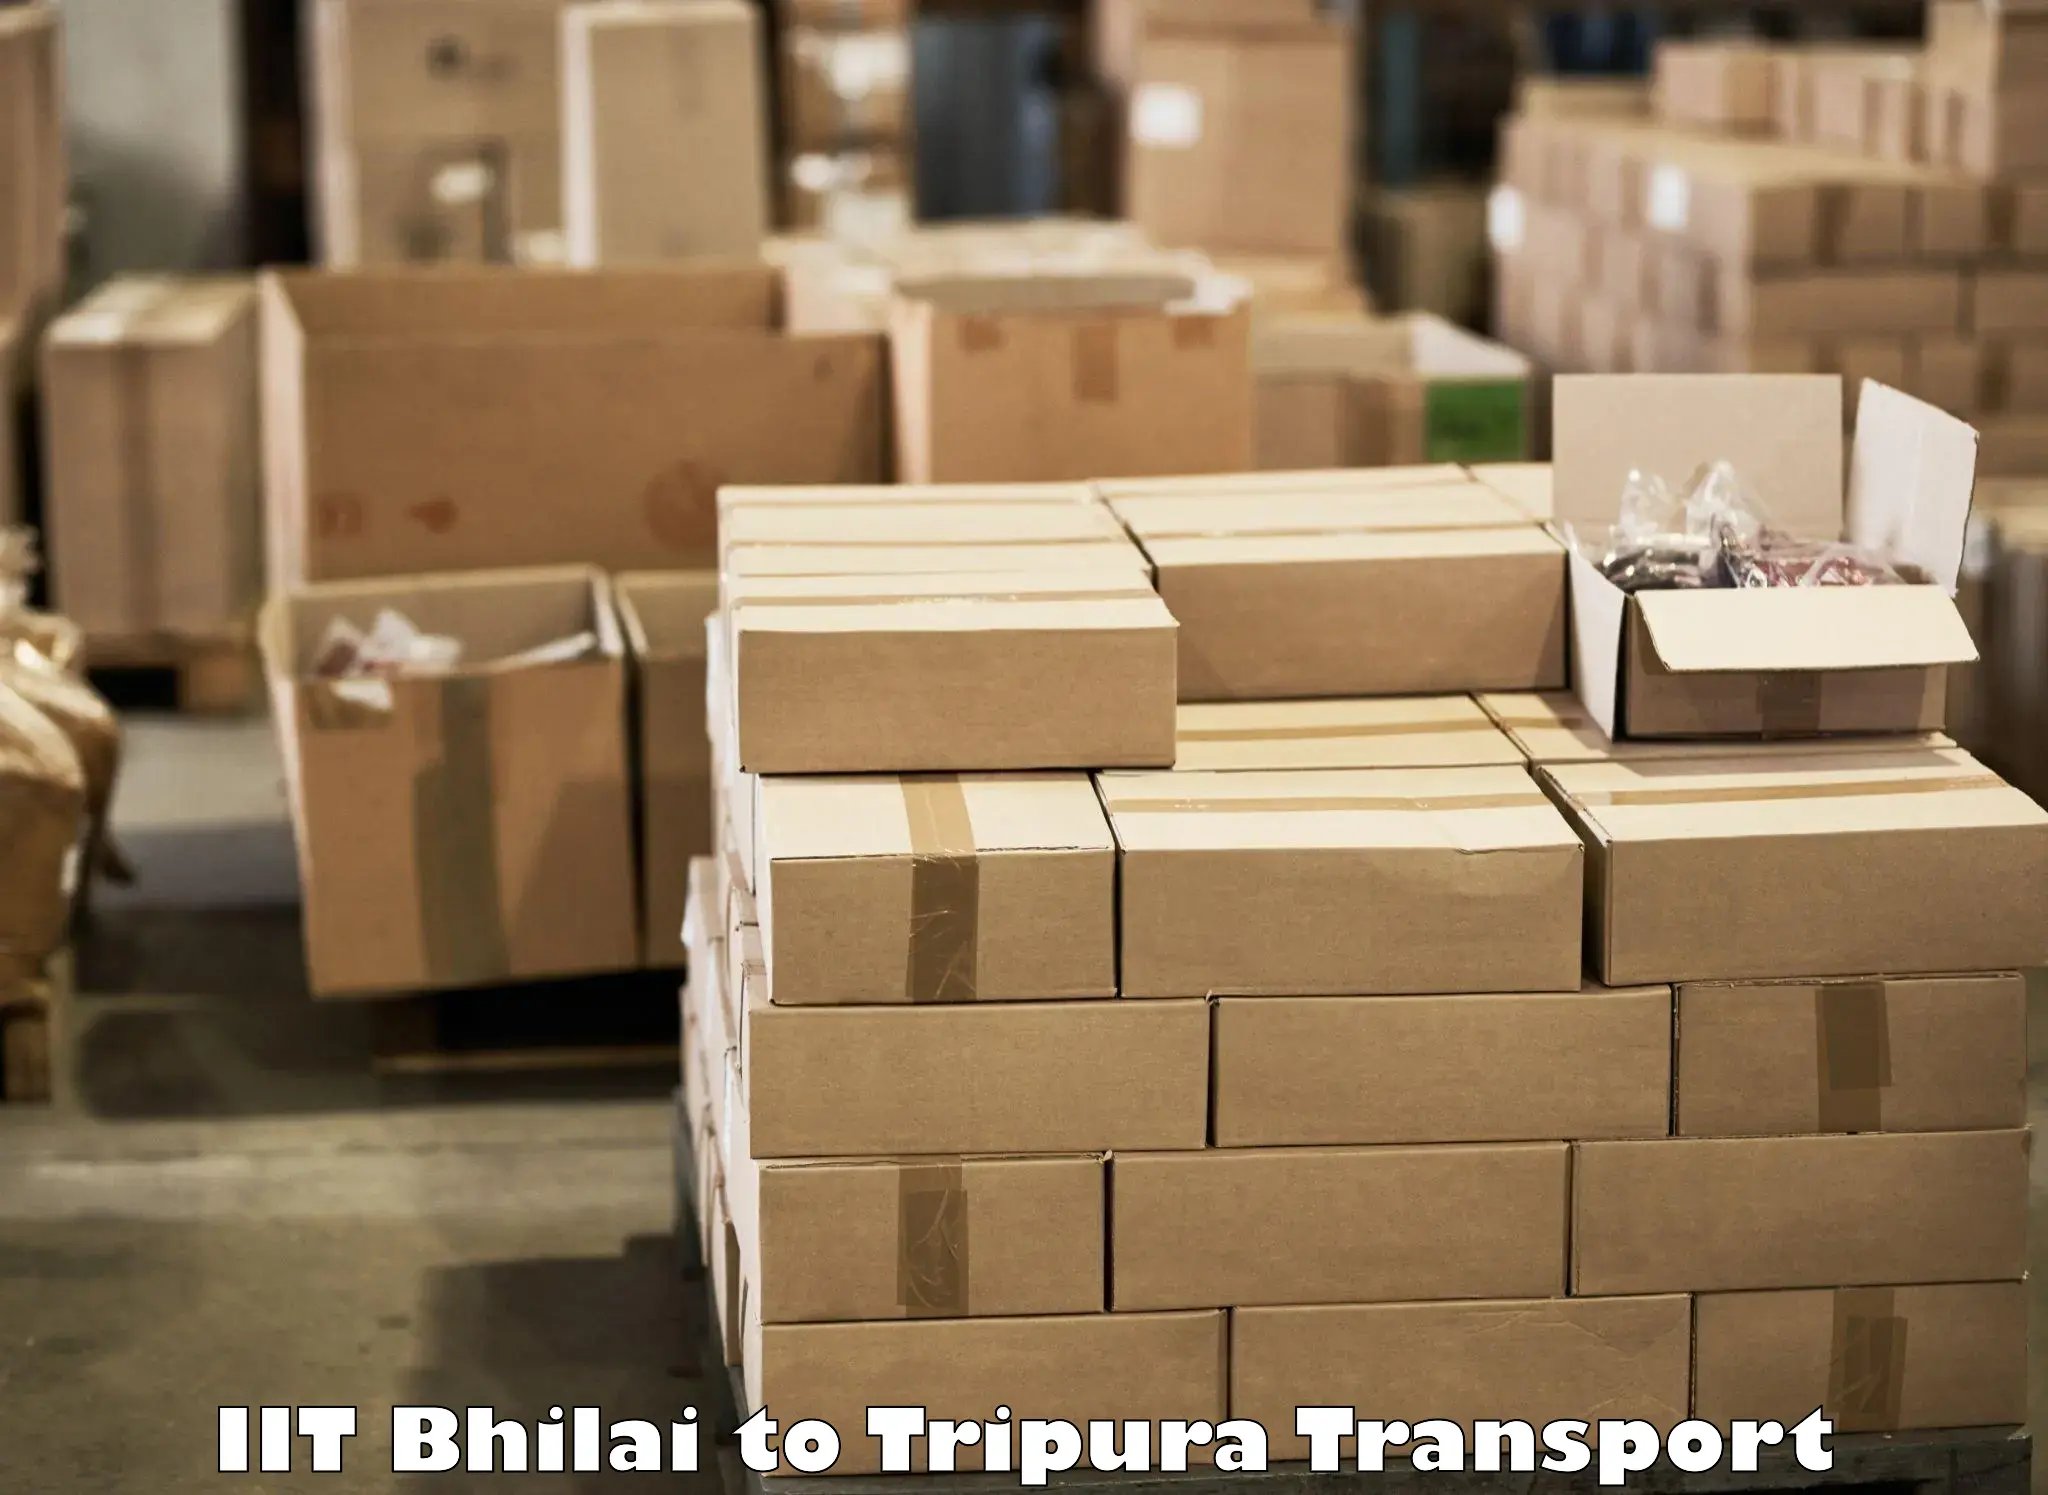 Commercial transport service IIT Bhilai to Teliamura